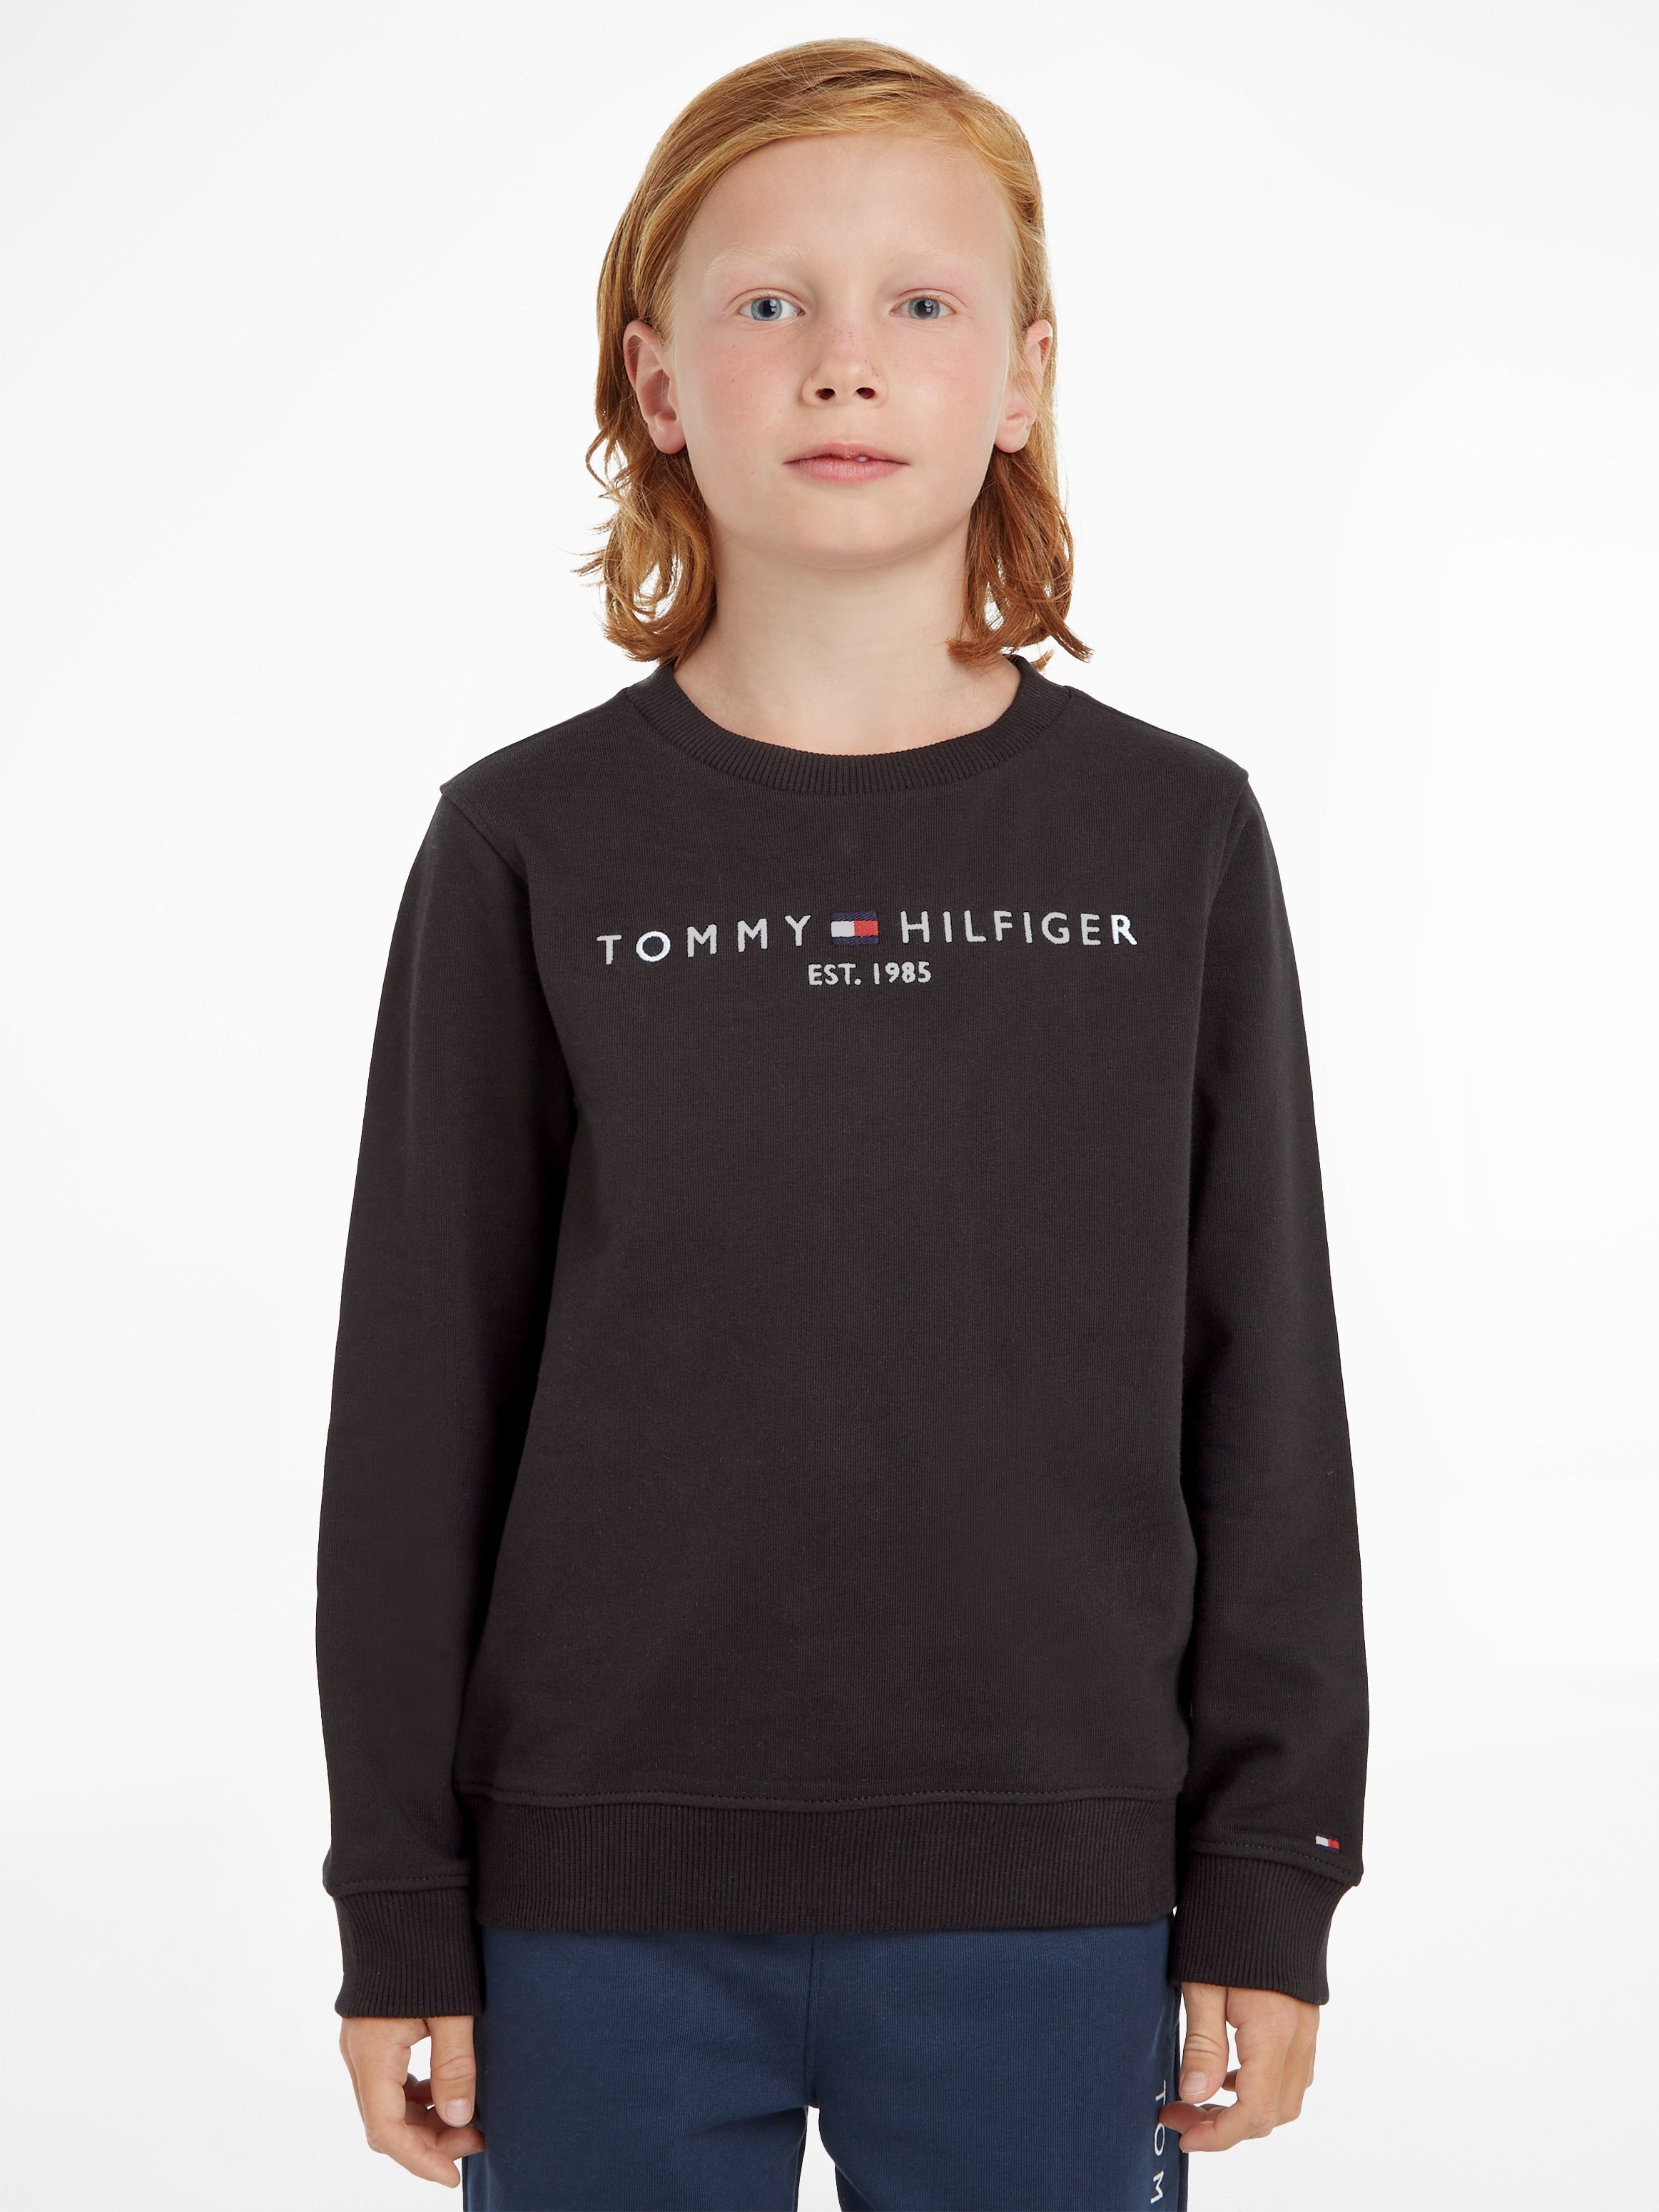 Tommy Hilfiger Sweatshirt Shop im OTTO Online